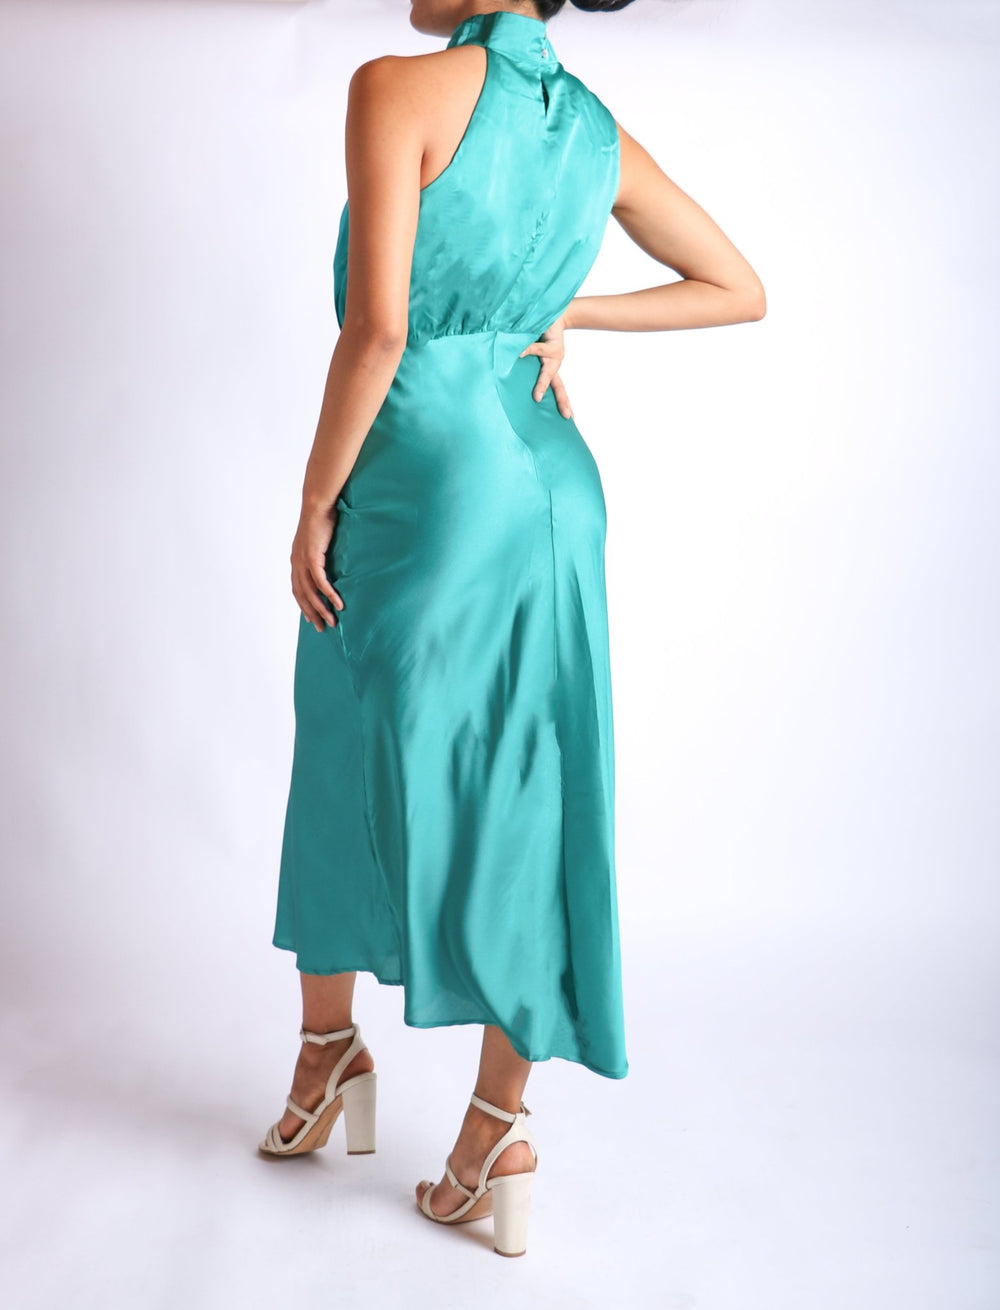 Eiza - turquesa - Lend the Trend renta de vestidos mexico